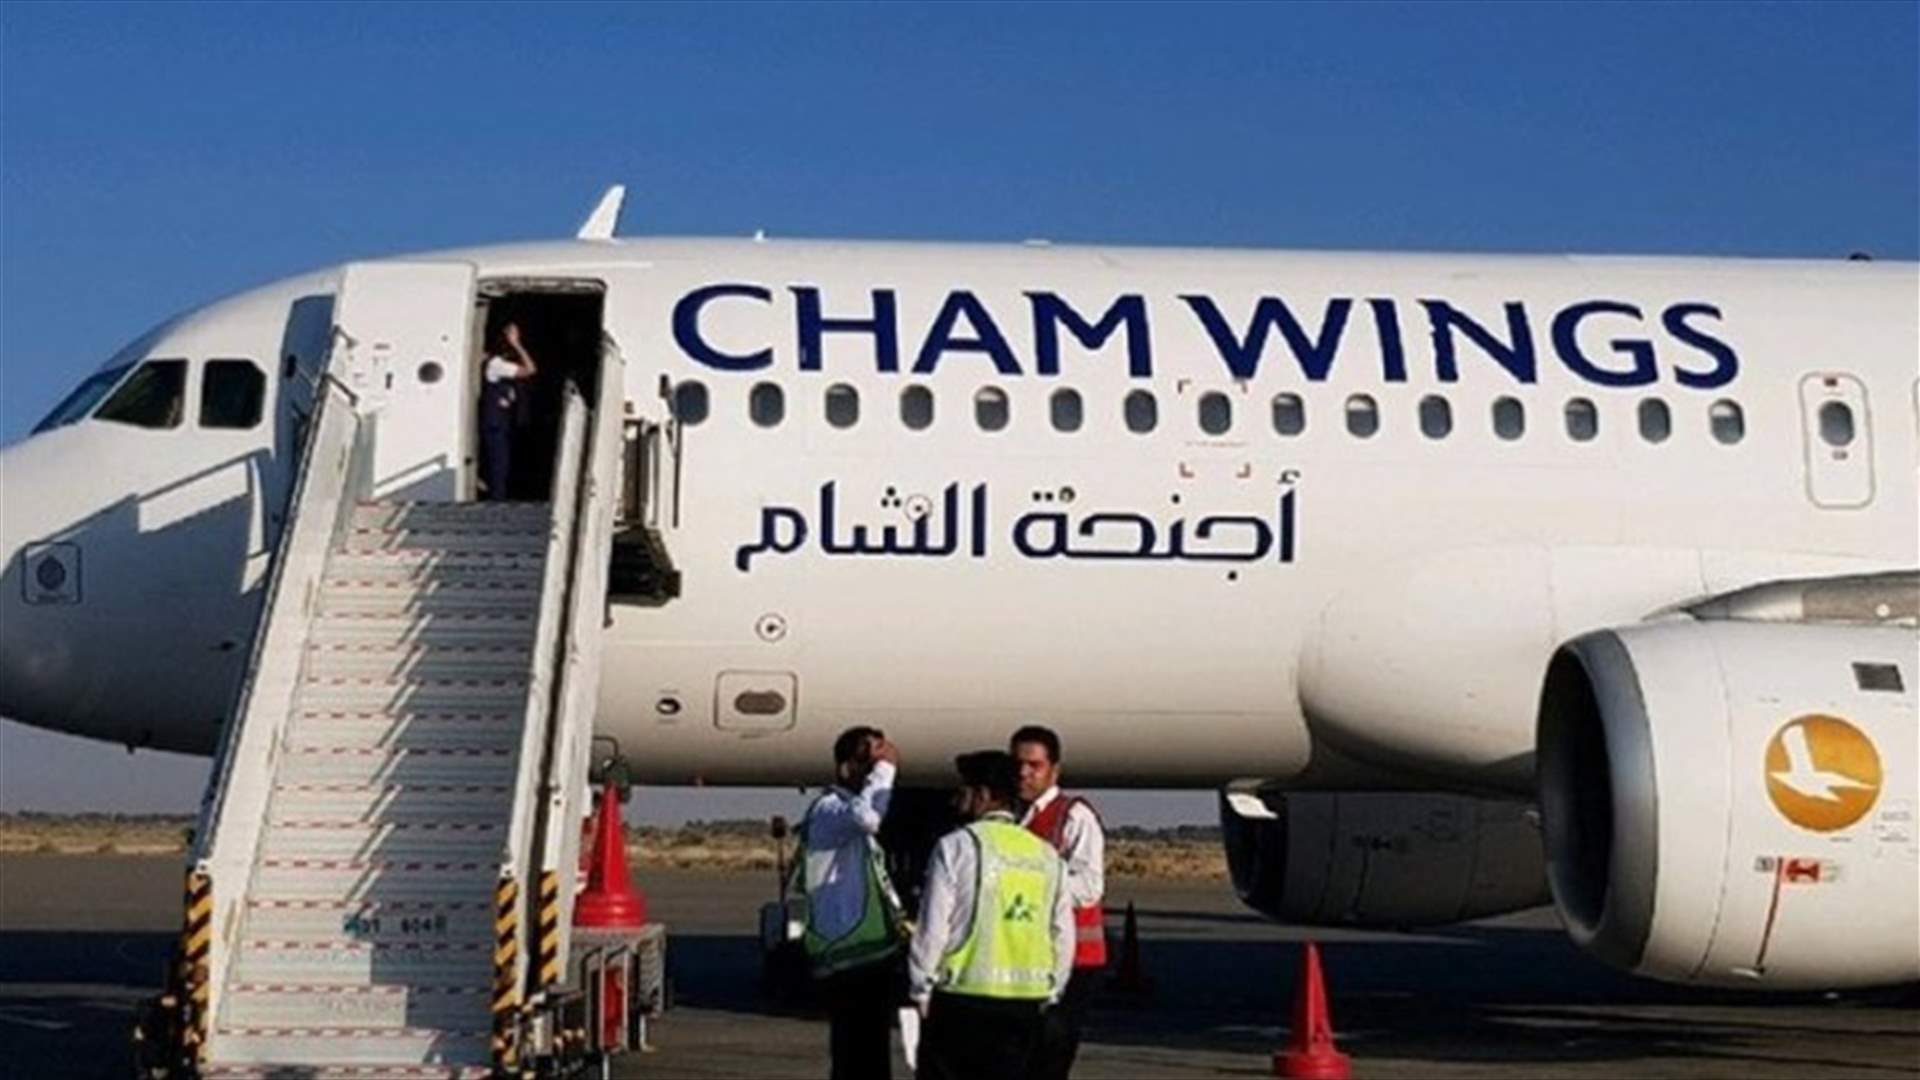 إقلاع أول رحلة من دمشق إلى أبوظبي عبر شركة طيران أجنحة الشام